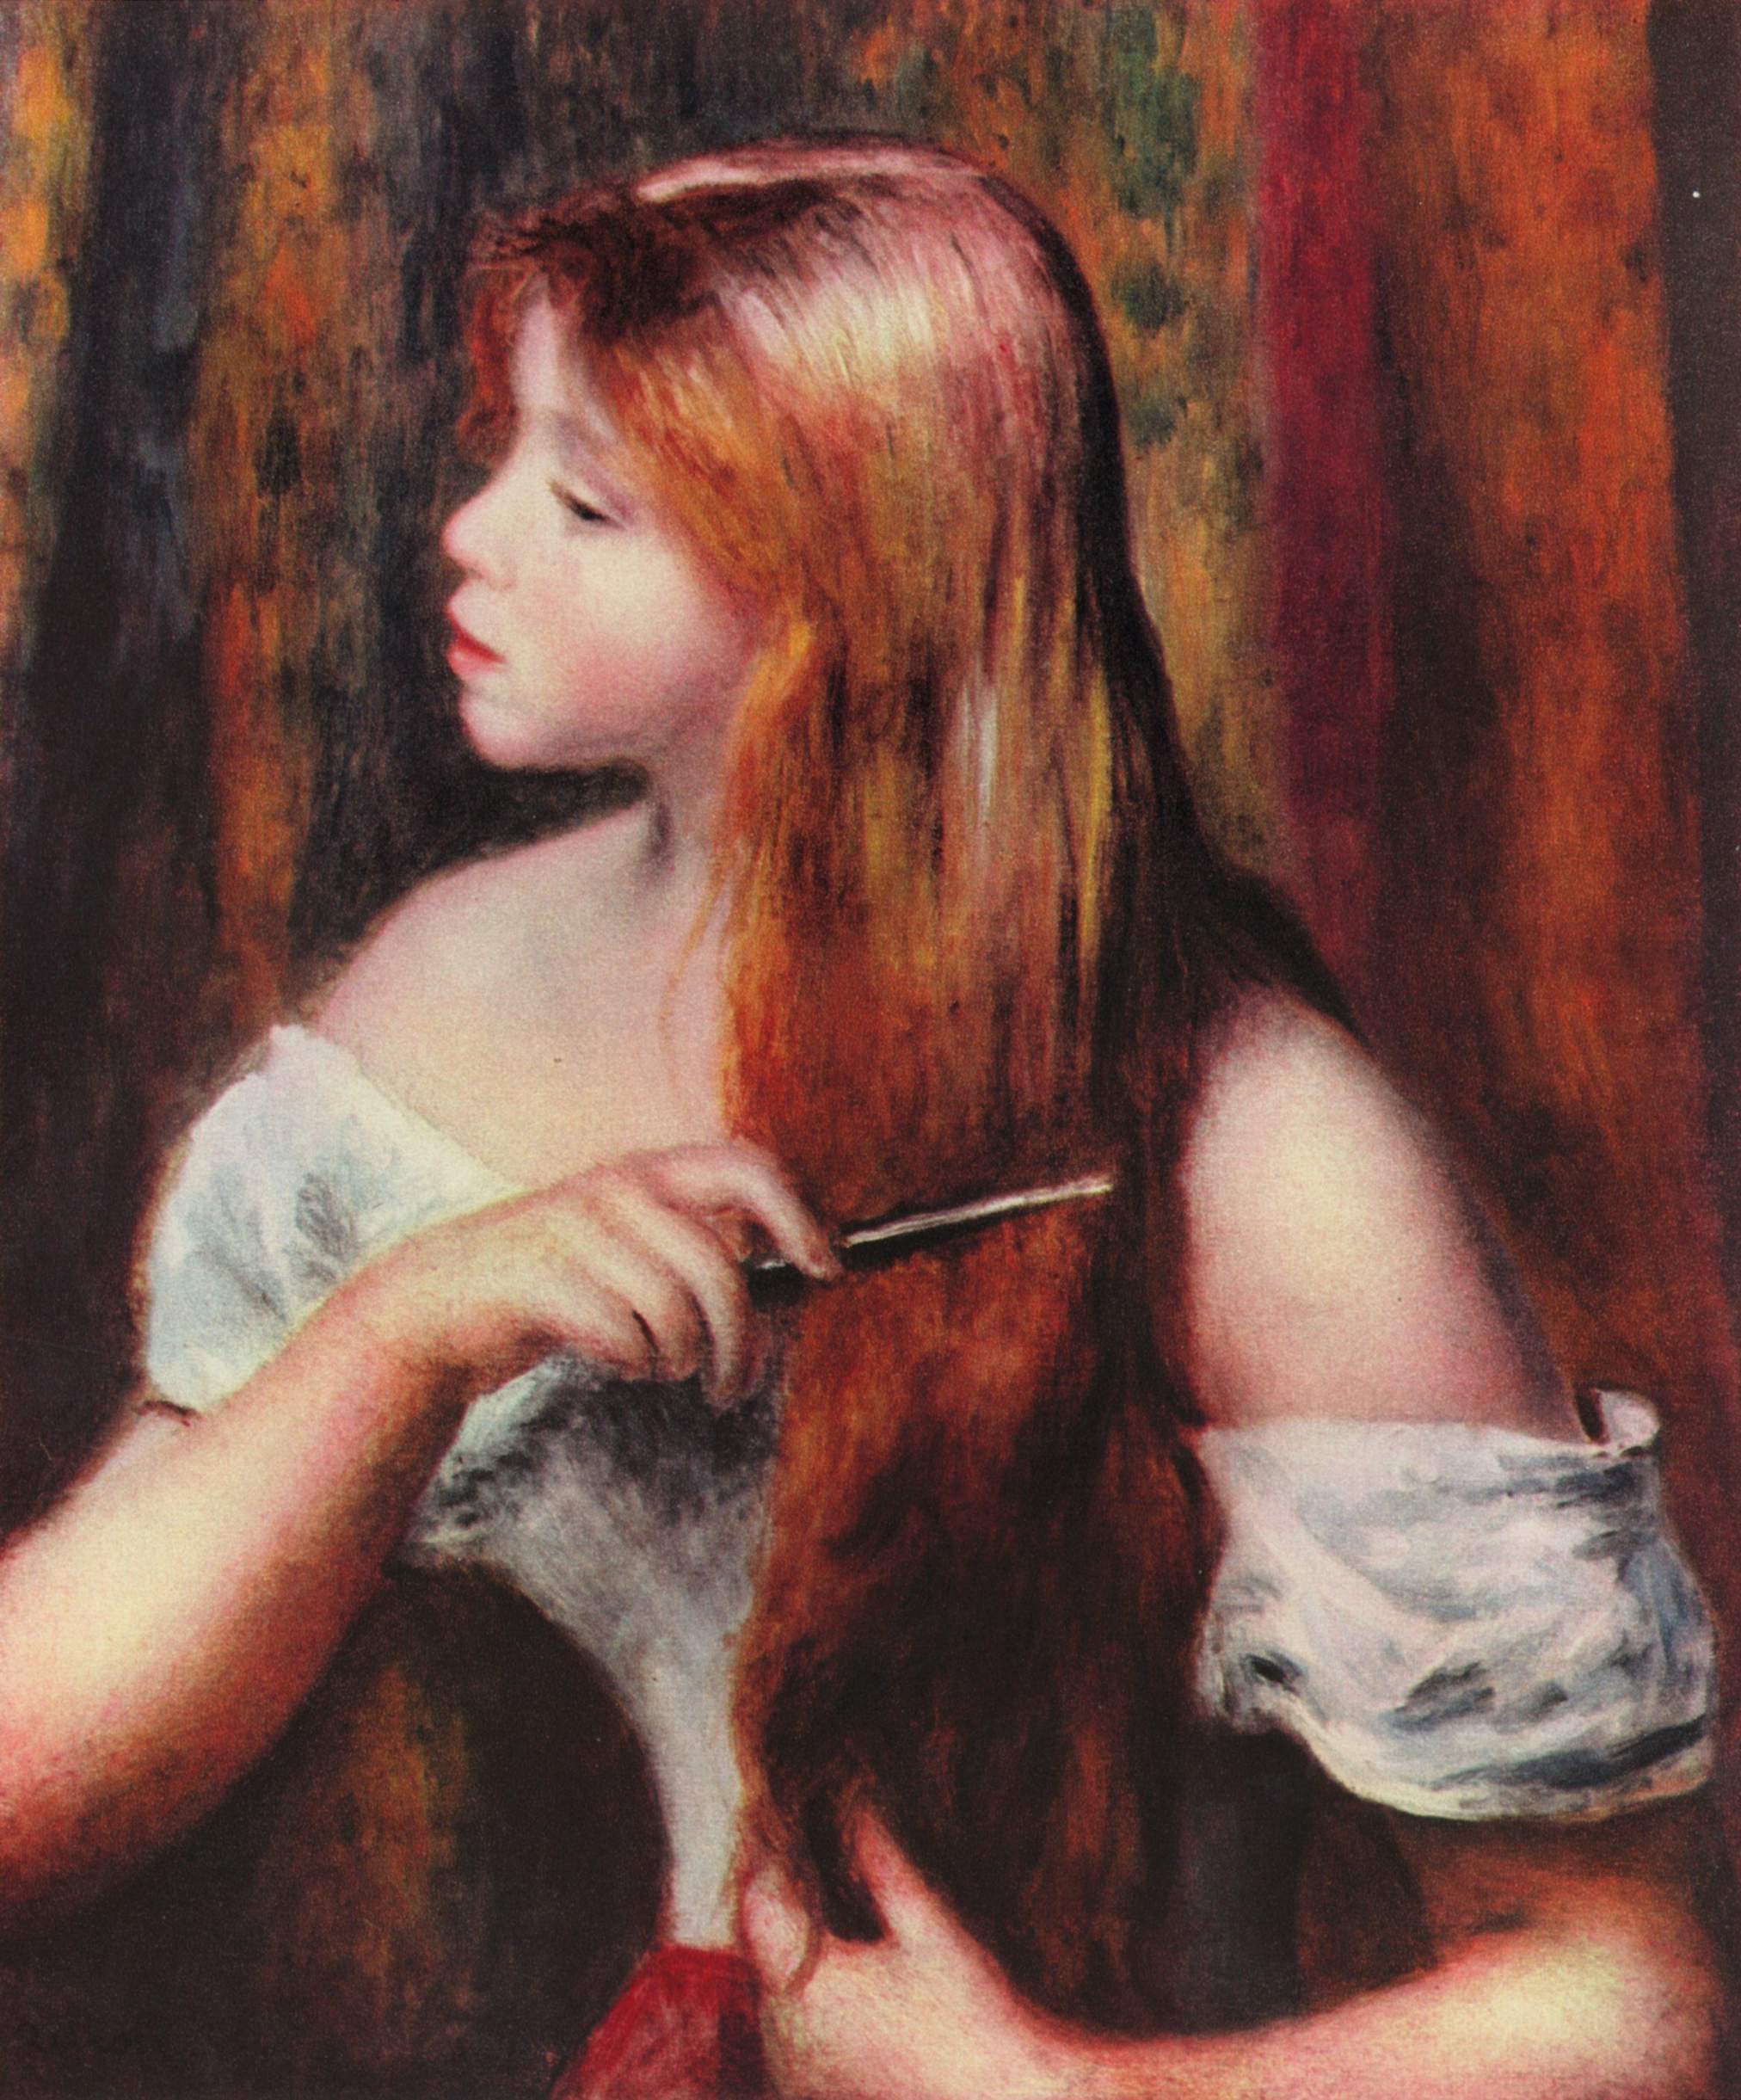 Chica joven peinándose el cabello by Pierre-Auguste Renoir - 1894 Museo Metropolitano de Arte